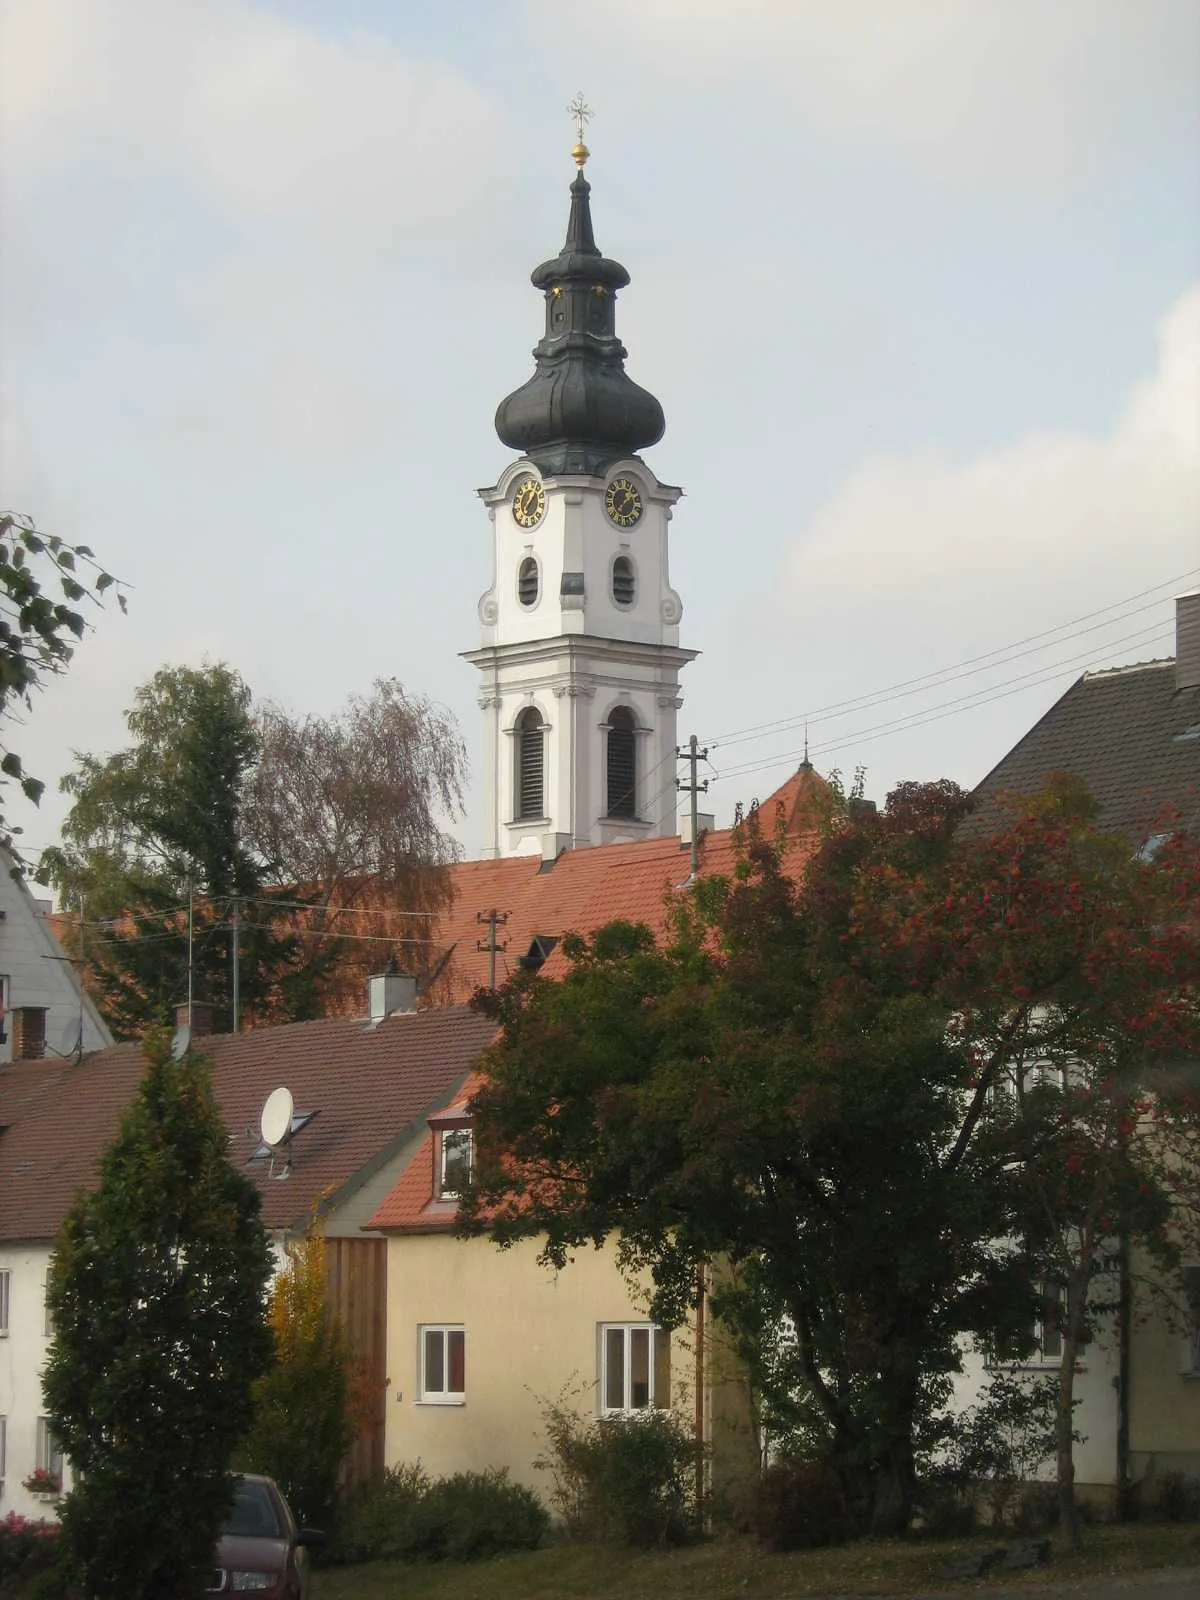 Photo showing: Kirchturm von St. Alto und St. Birgitta in Altomünster (Künstler: Johann Michael Fischer).
„Dies ist der schönste Turm in meinem Königreich!“ soll König Ludwig I. über den Kirchturm gesagt haben.